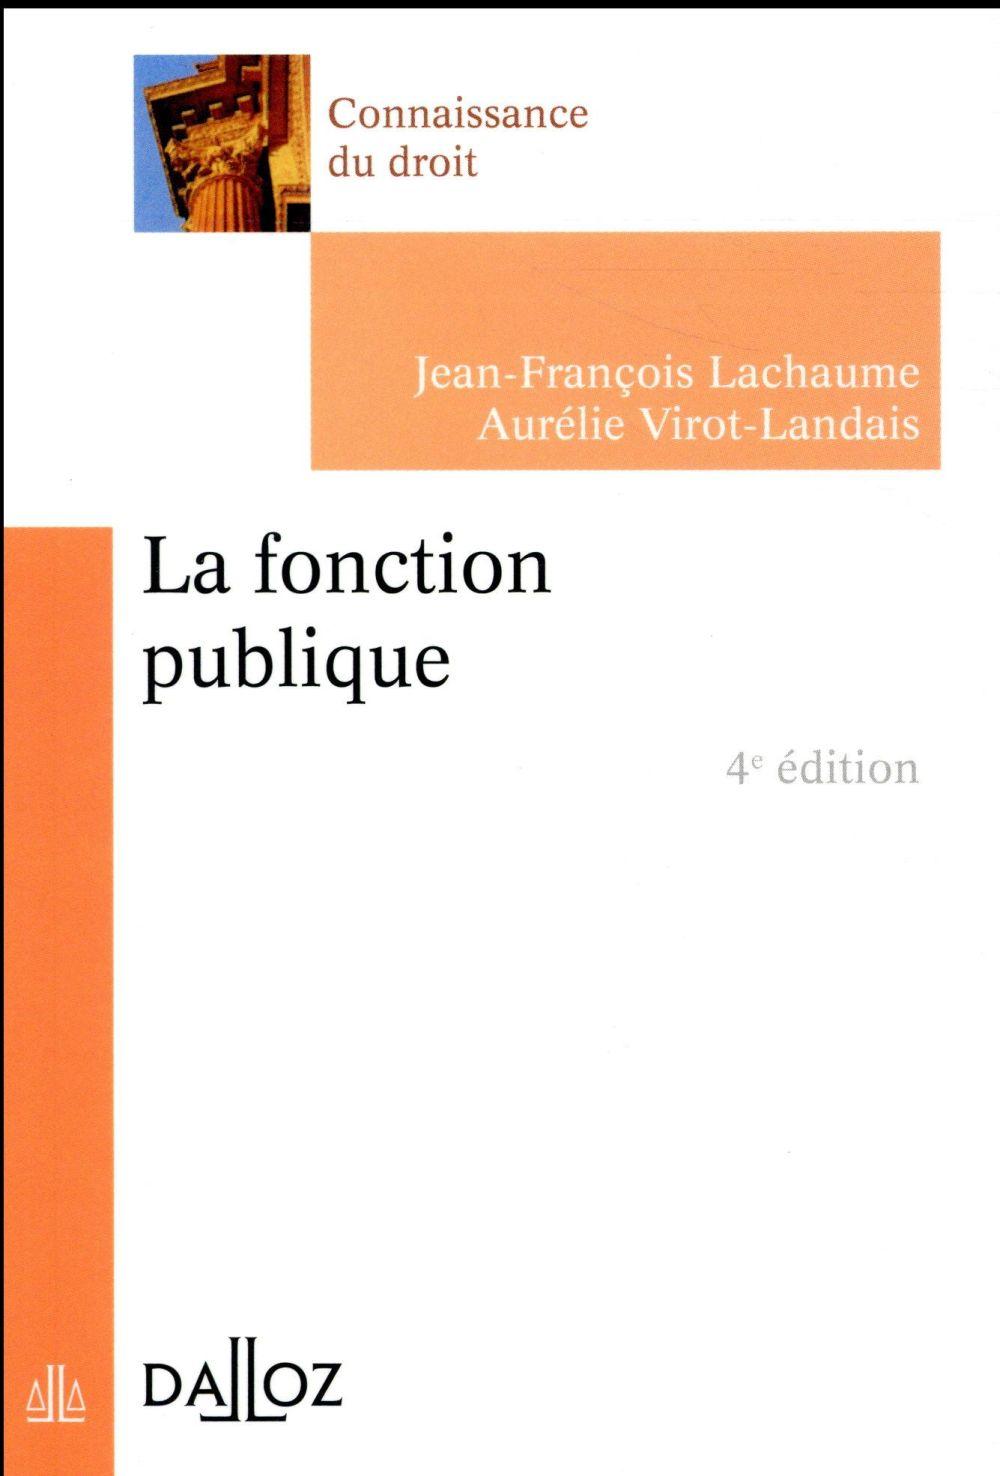 Vente Livre :                                    La fonction publique (édition 2017)
- Jean-François Lachaume                                     